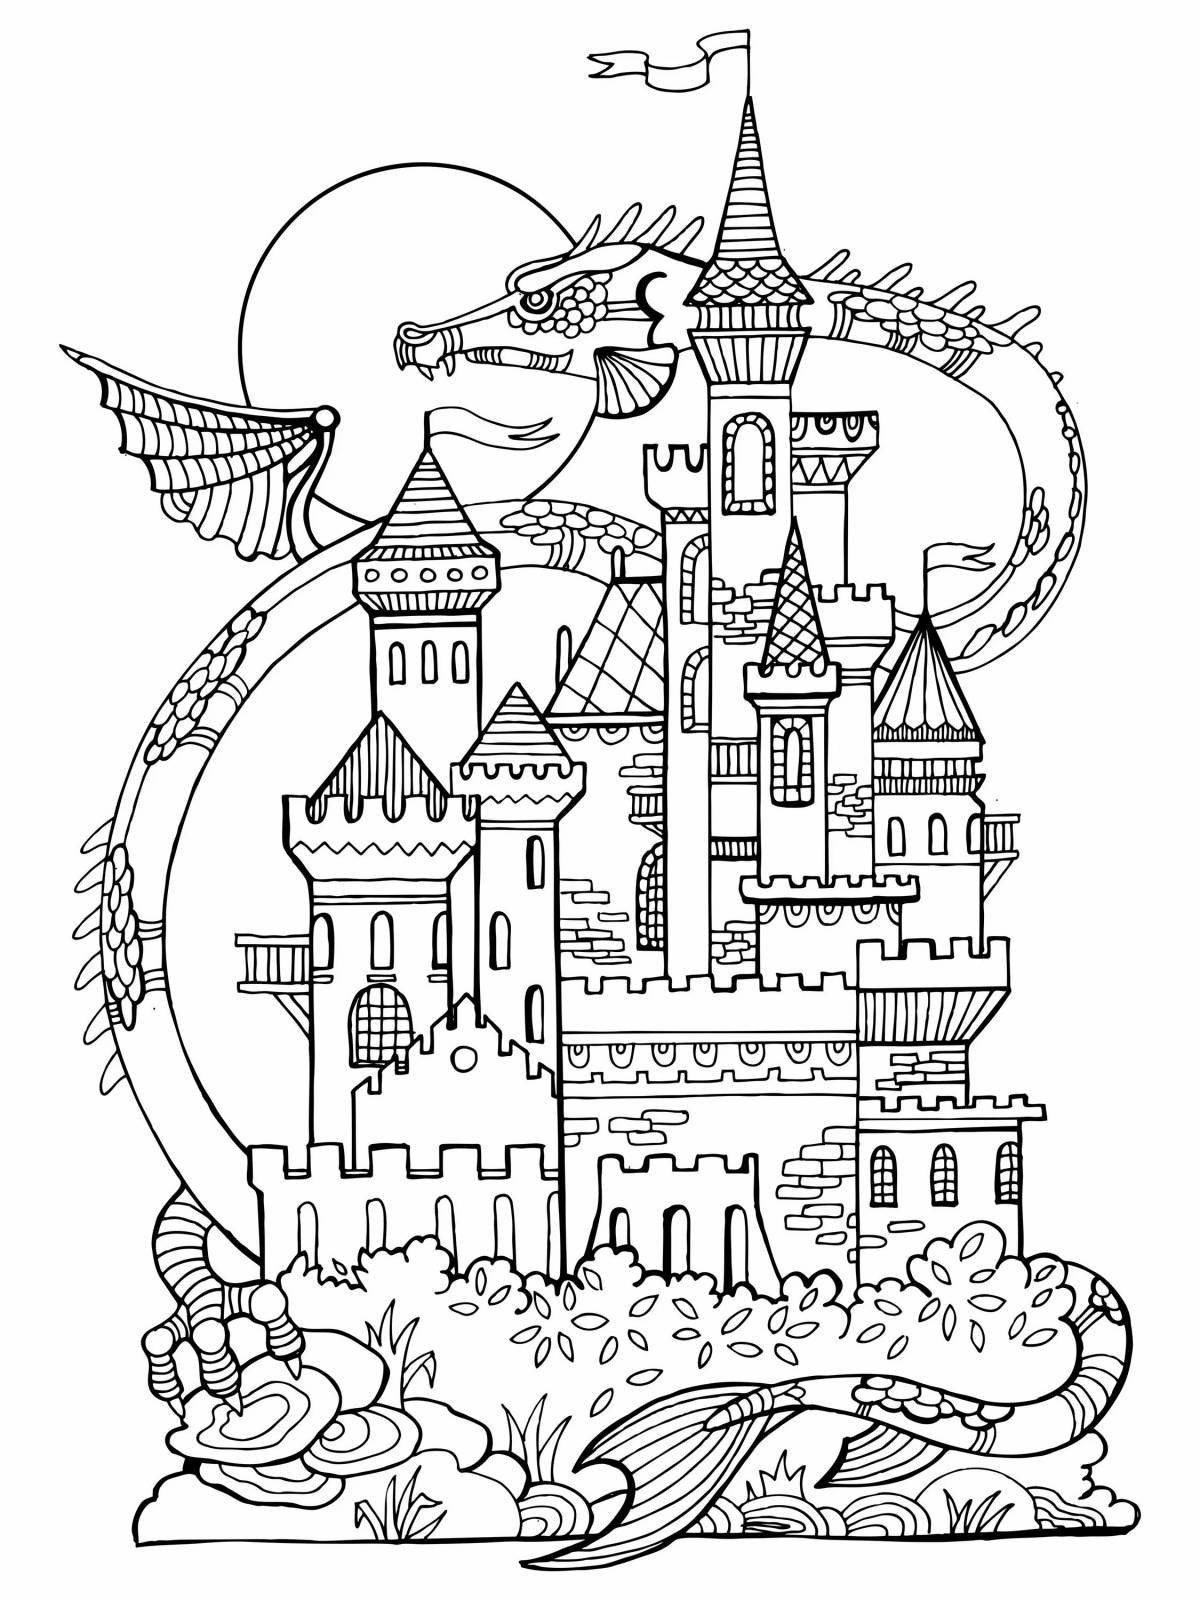 Coloring page elegant magic castle